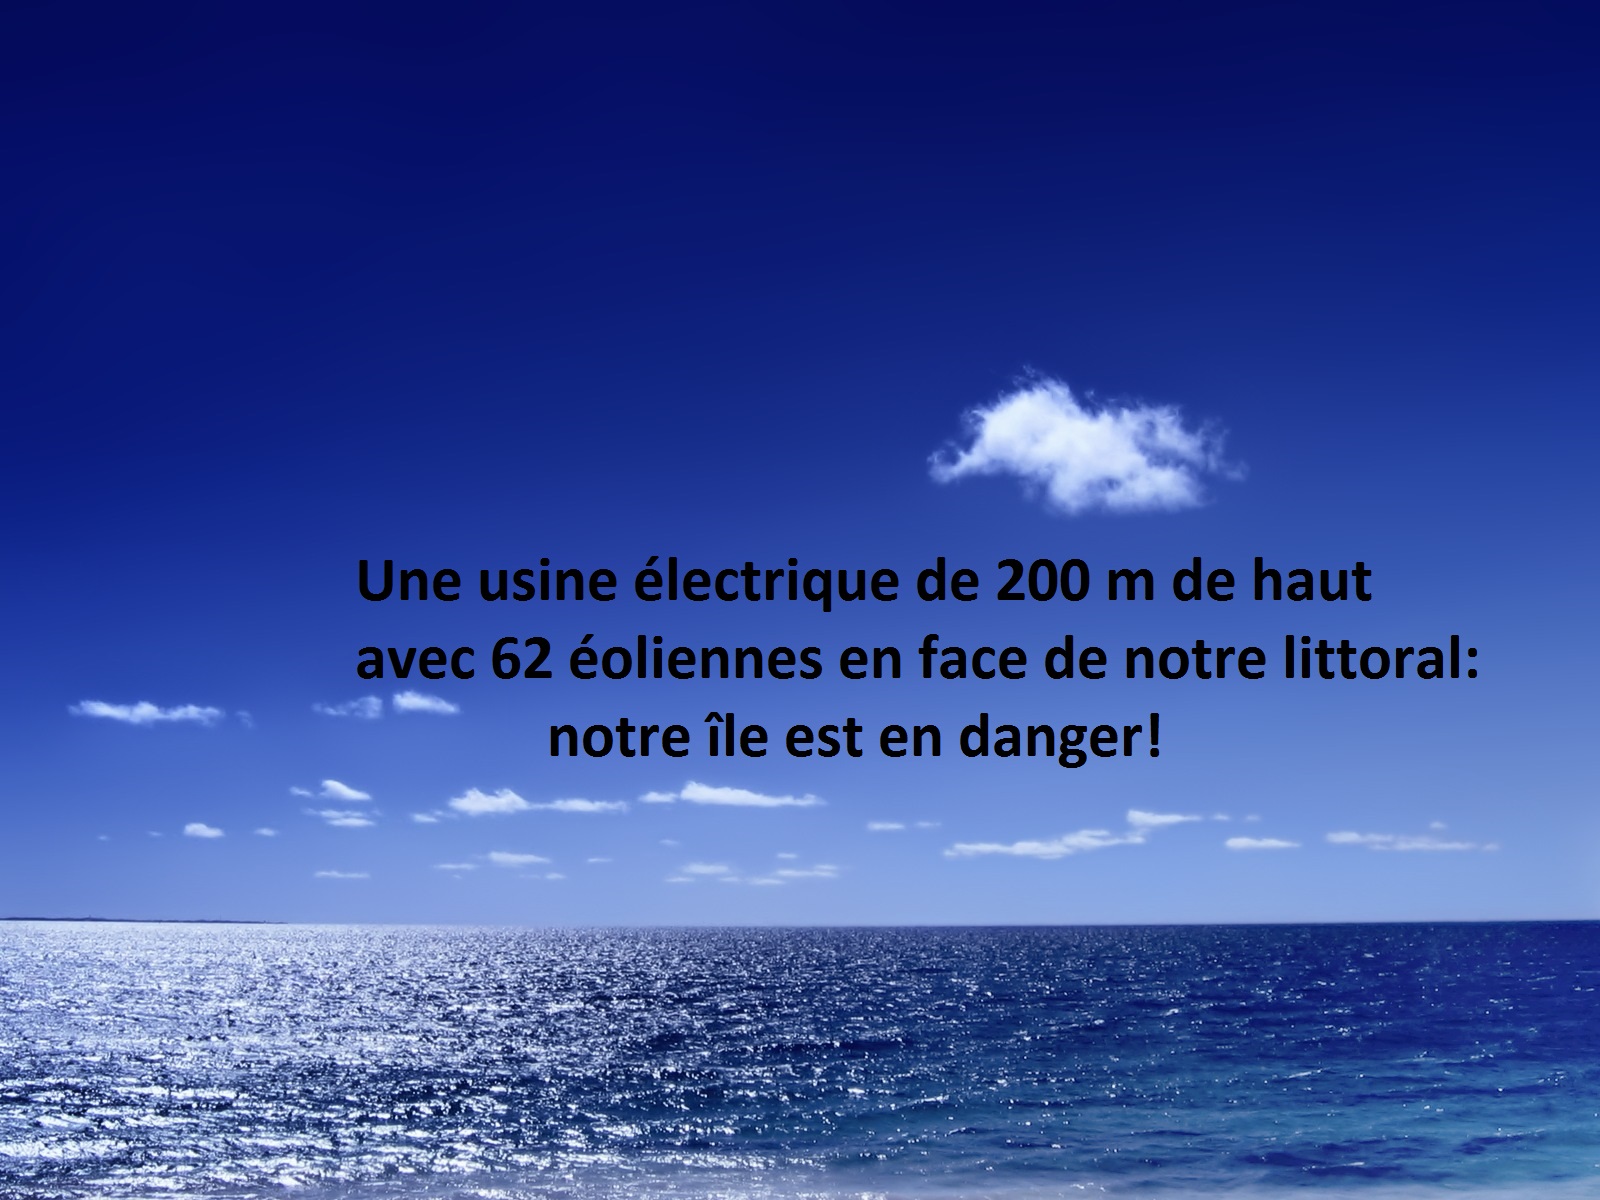 Noirmoutiers : pour ceux qui ne sont pas informés: